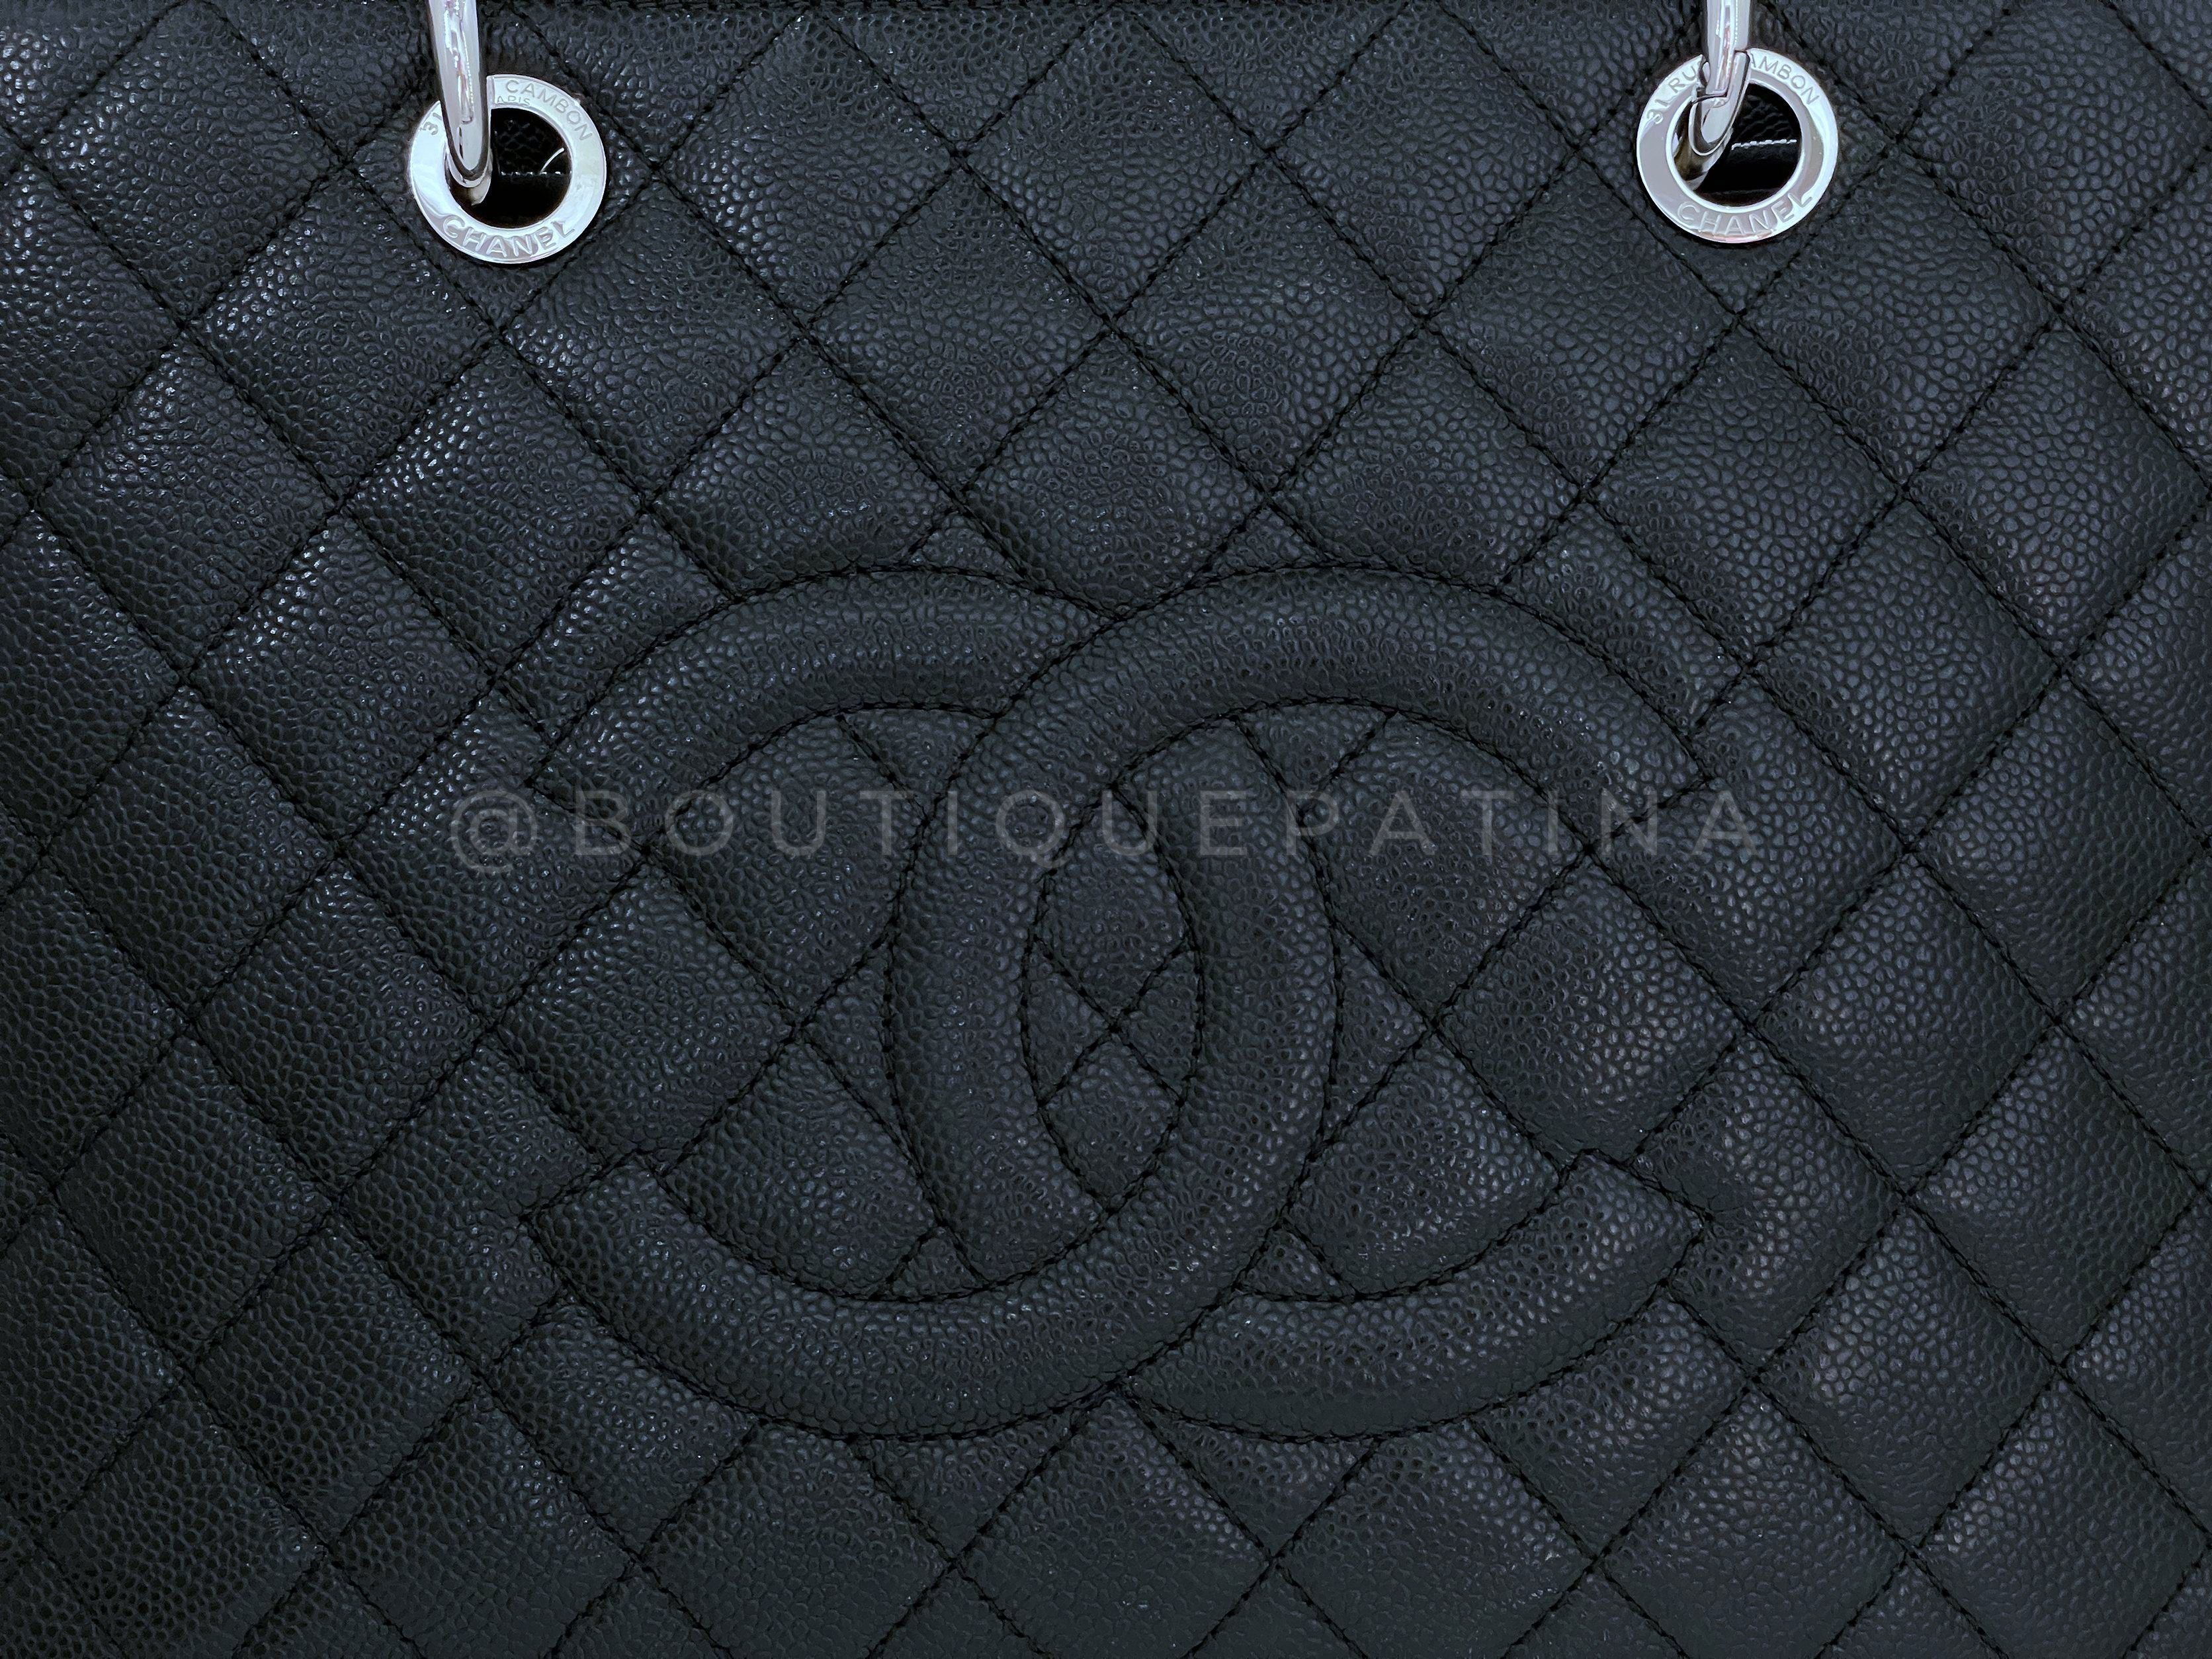 Pristine Chanel Black Caviar Grand Shopper Tote GST Bag SHW